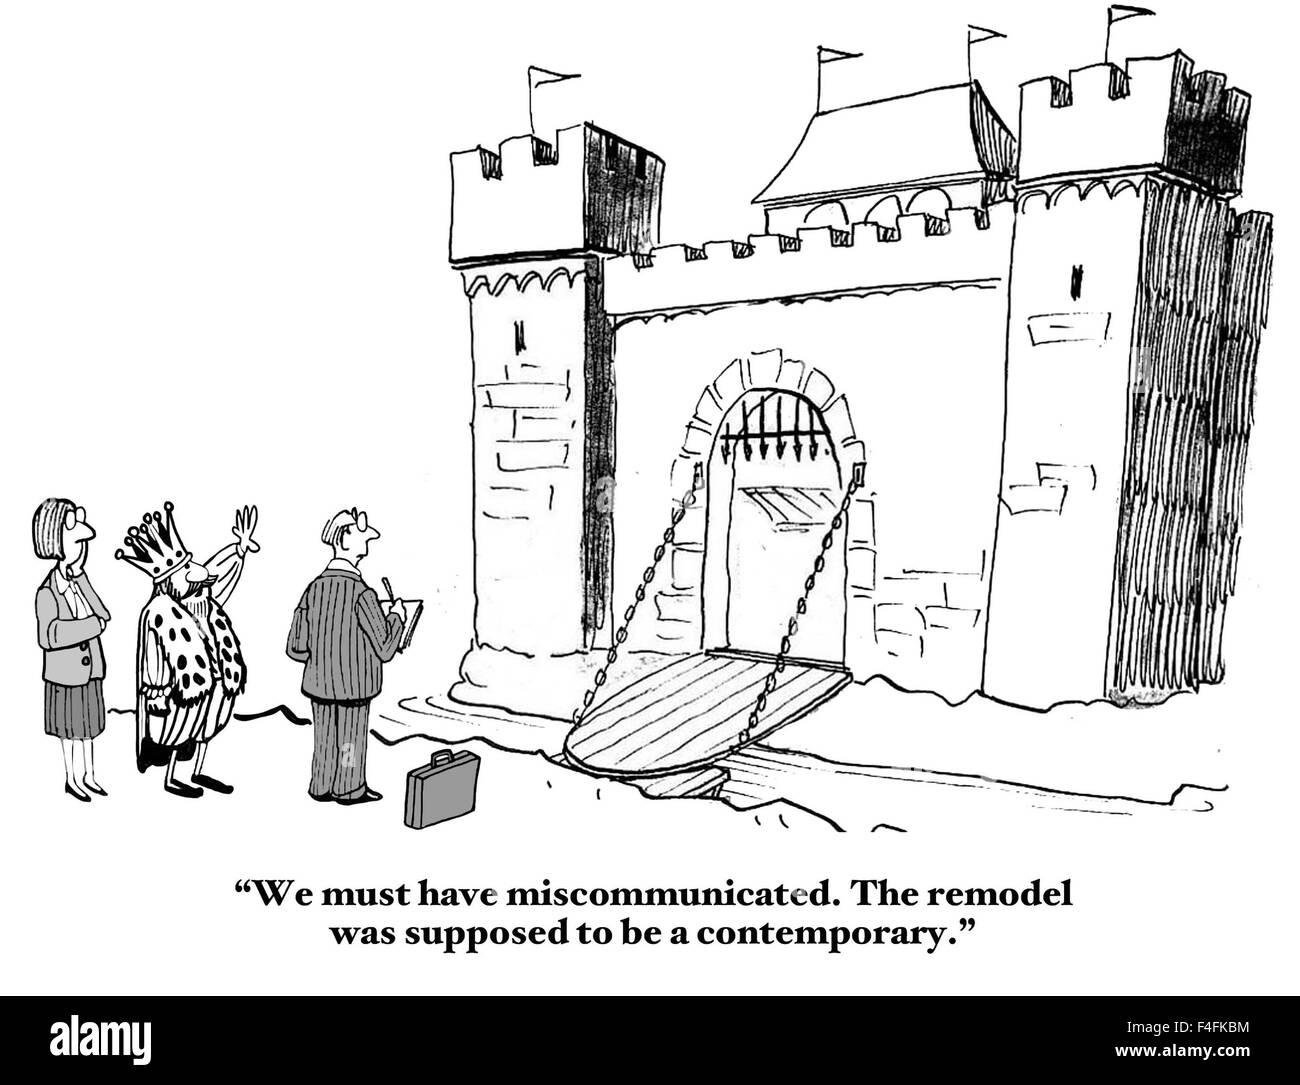 Professionelle Cartoon des Königs zu Menschen, sagen "Wir müssen miscommunicated haben.  Die Umgestaltung war ein Zeitgenosse sein soll ". Stockfoto